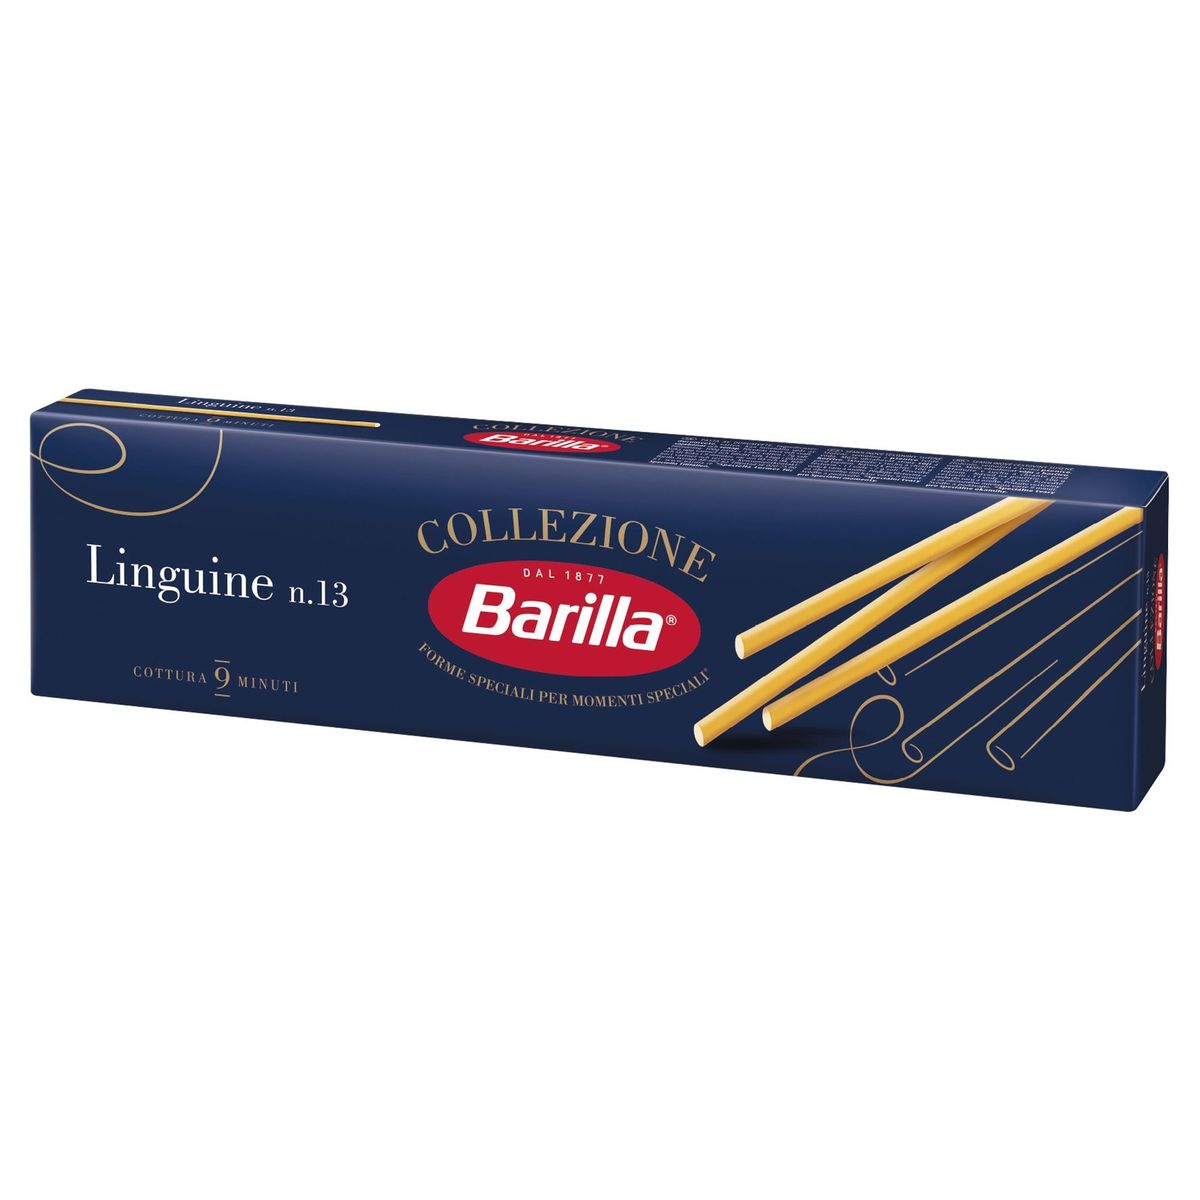 Barilla Pâtes Linguine Collezione 500g